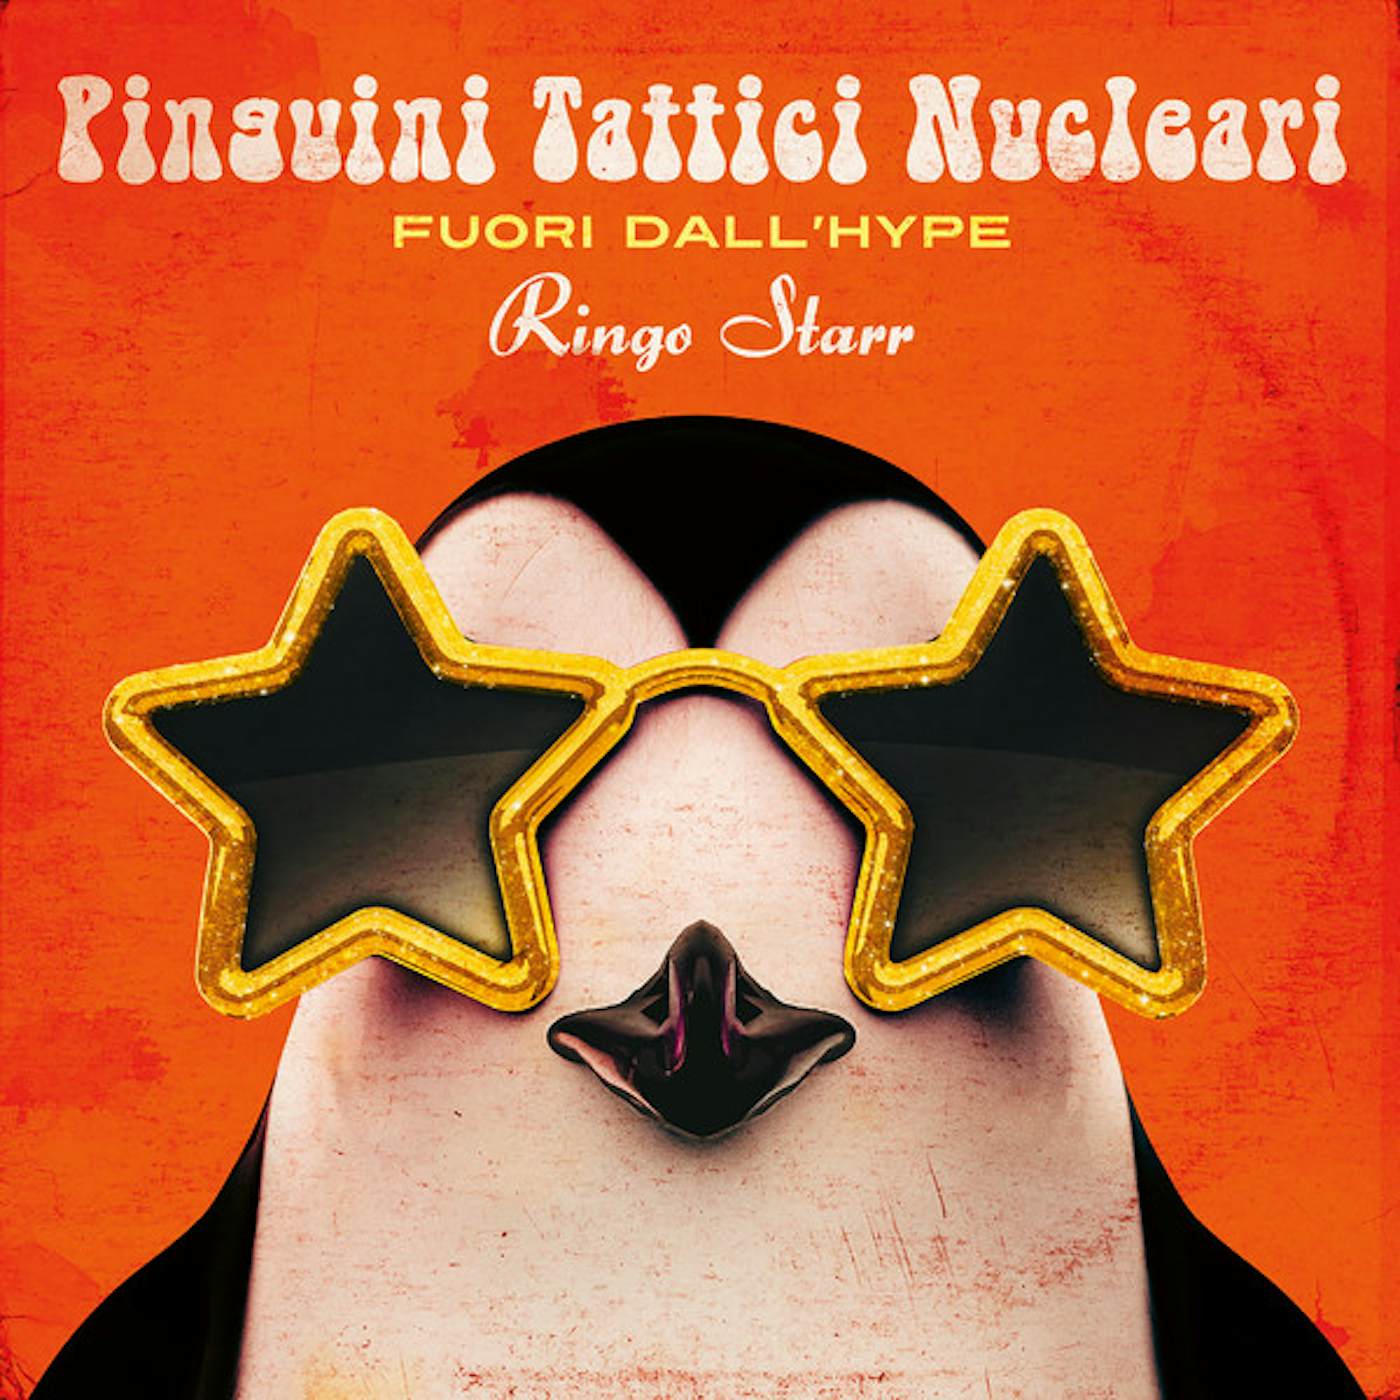 Pinguini Tattici Nucleari FUORI DALL HYPE RINGO STARR Vinyl Record